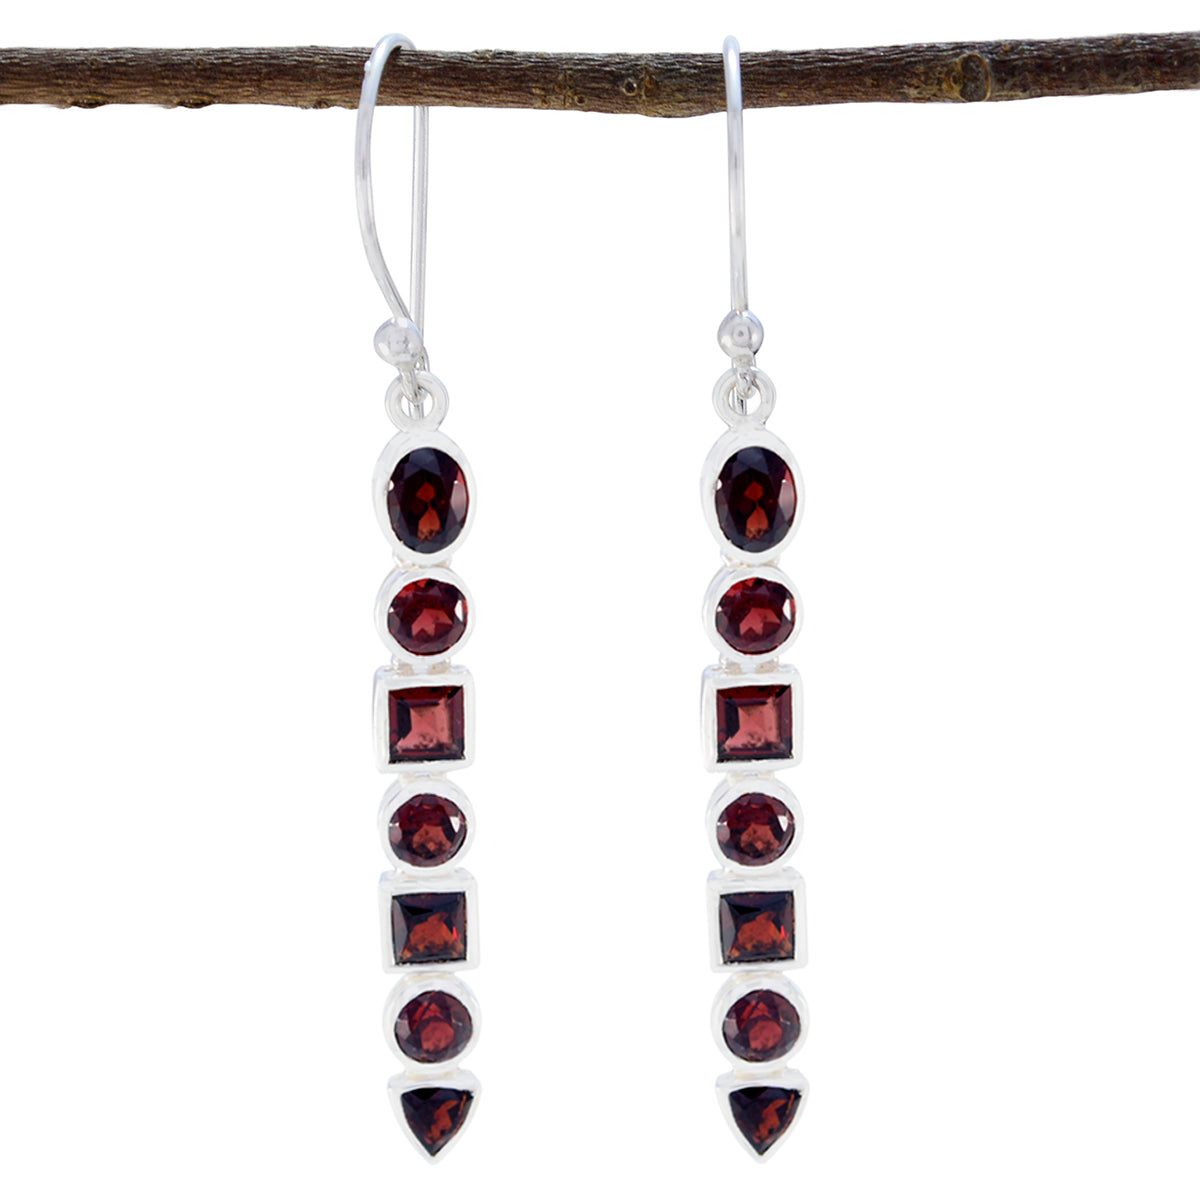 Riyo Genuine Gems multi shape Faceted Red Garnet Silver Earrings gift for mom birthday